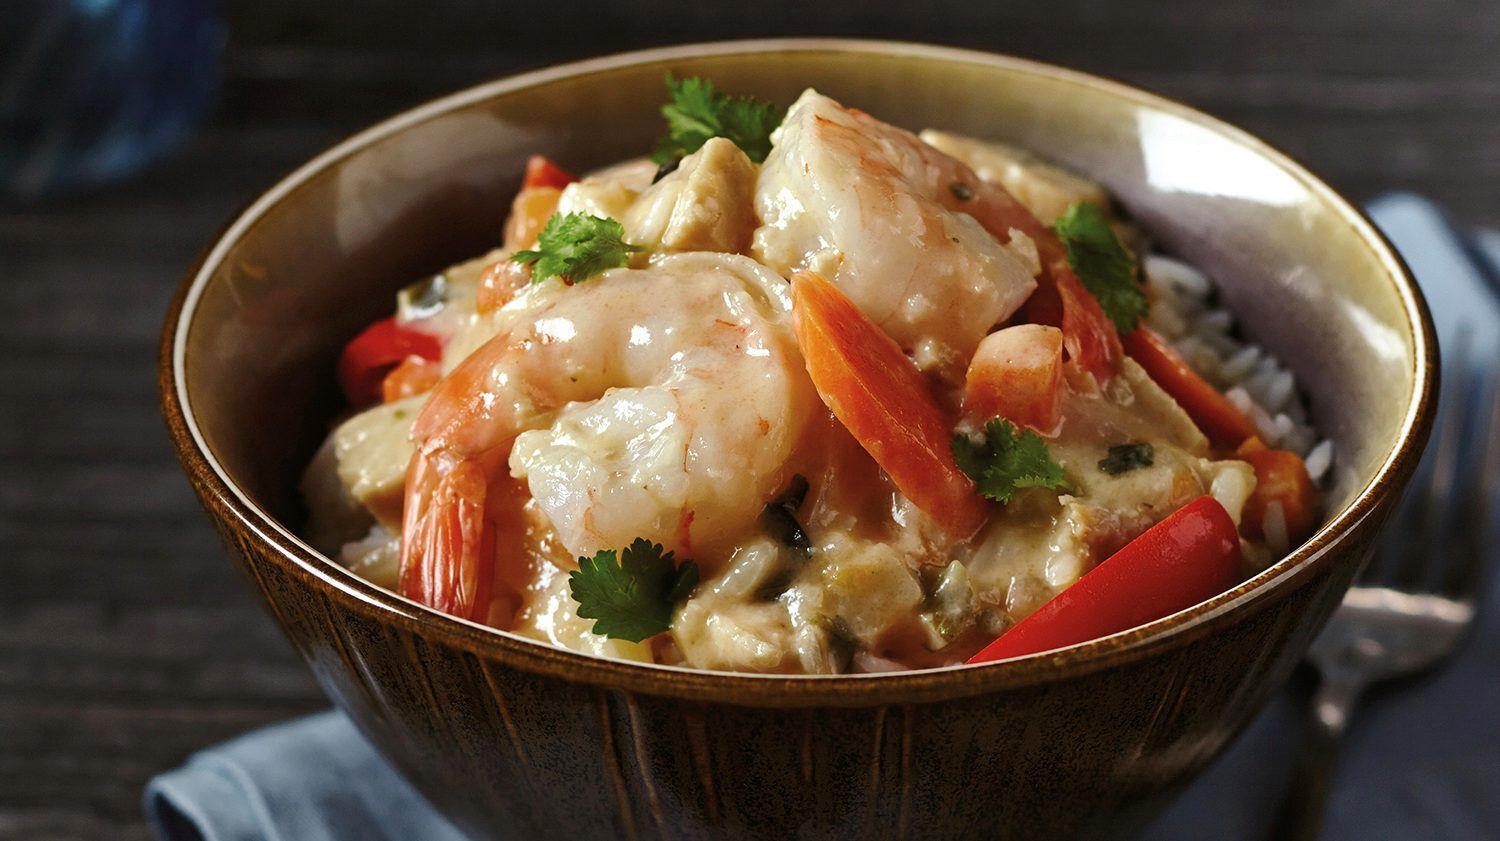 Thai Shrimp & Chicken Stir Fry